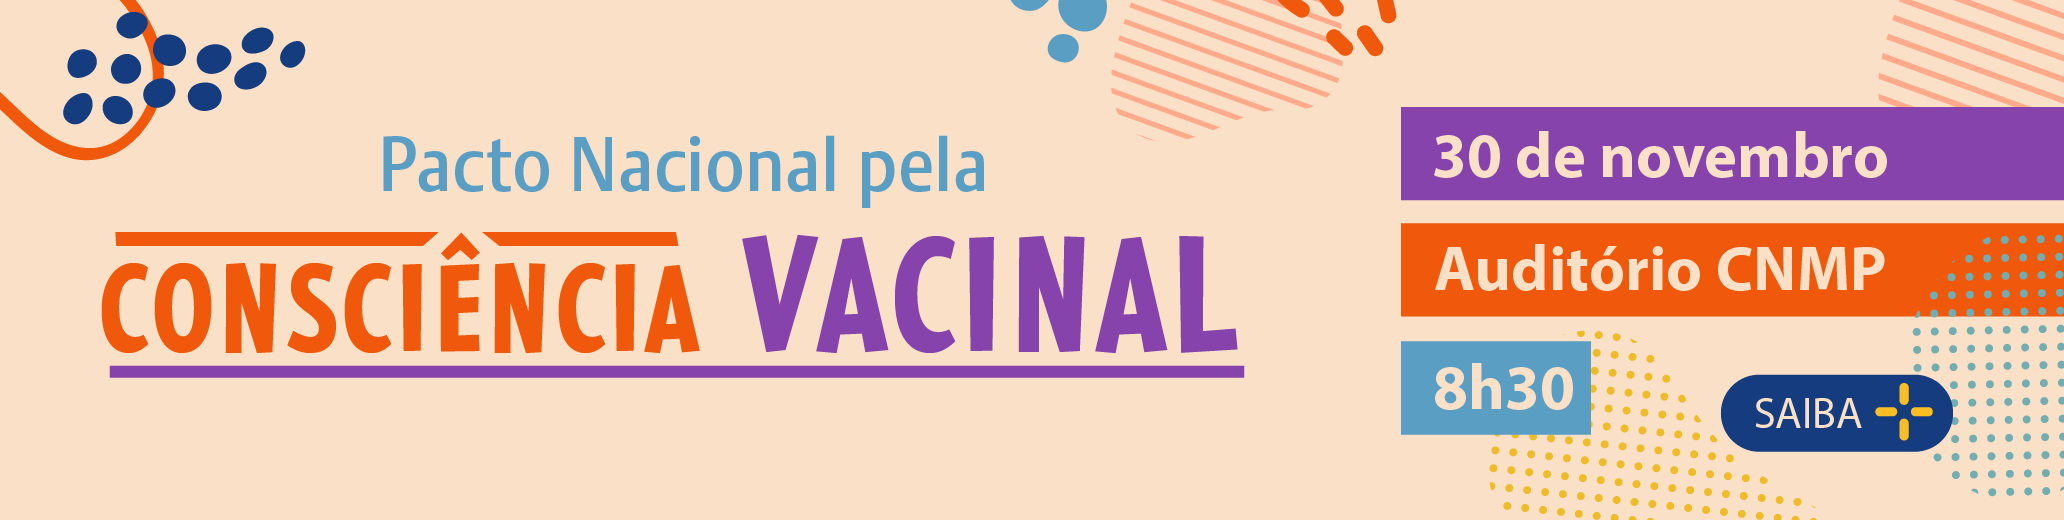 consciencia_vacinal.png - 88,21 kB